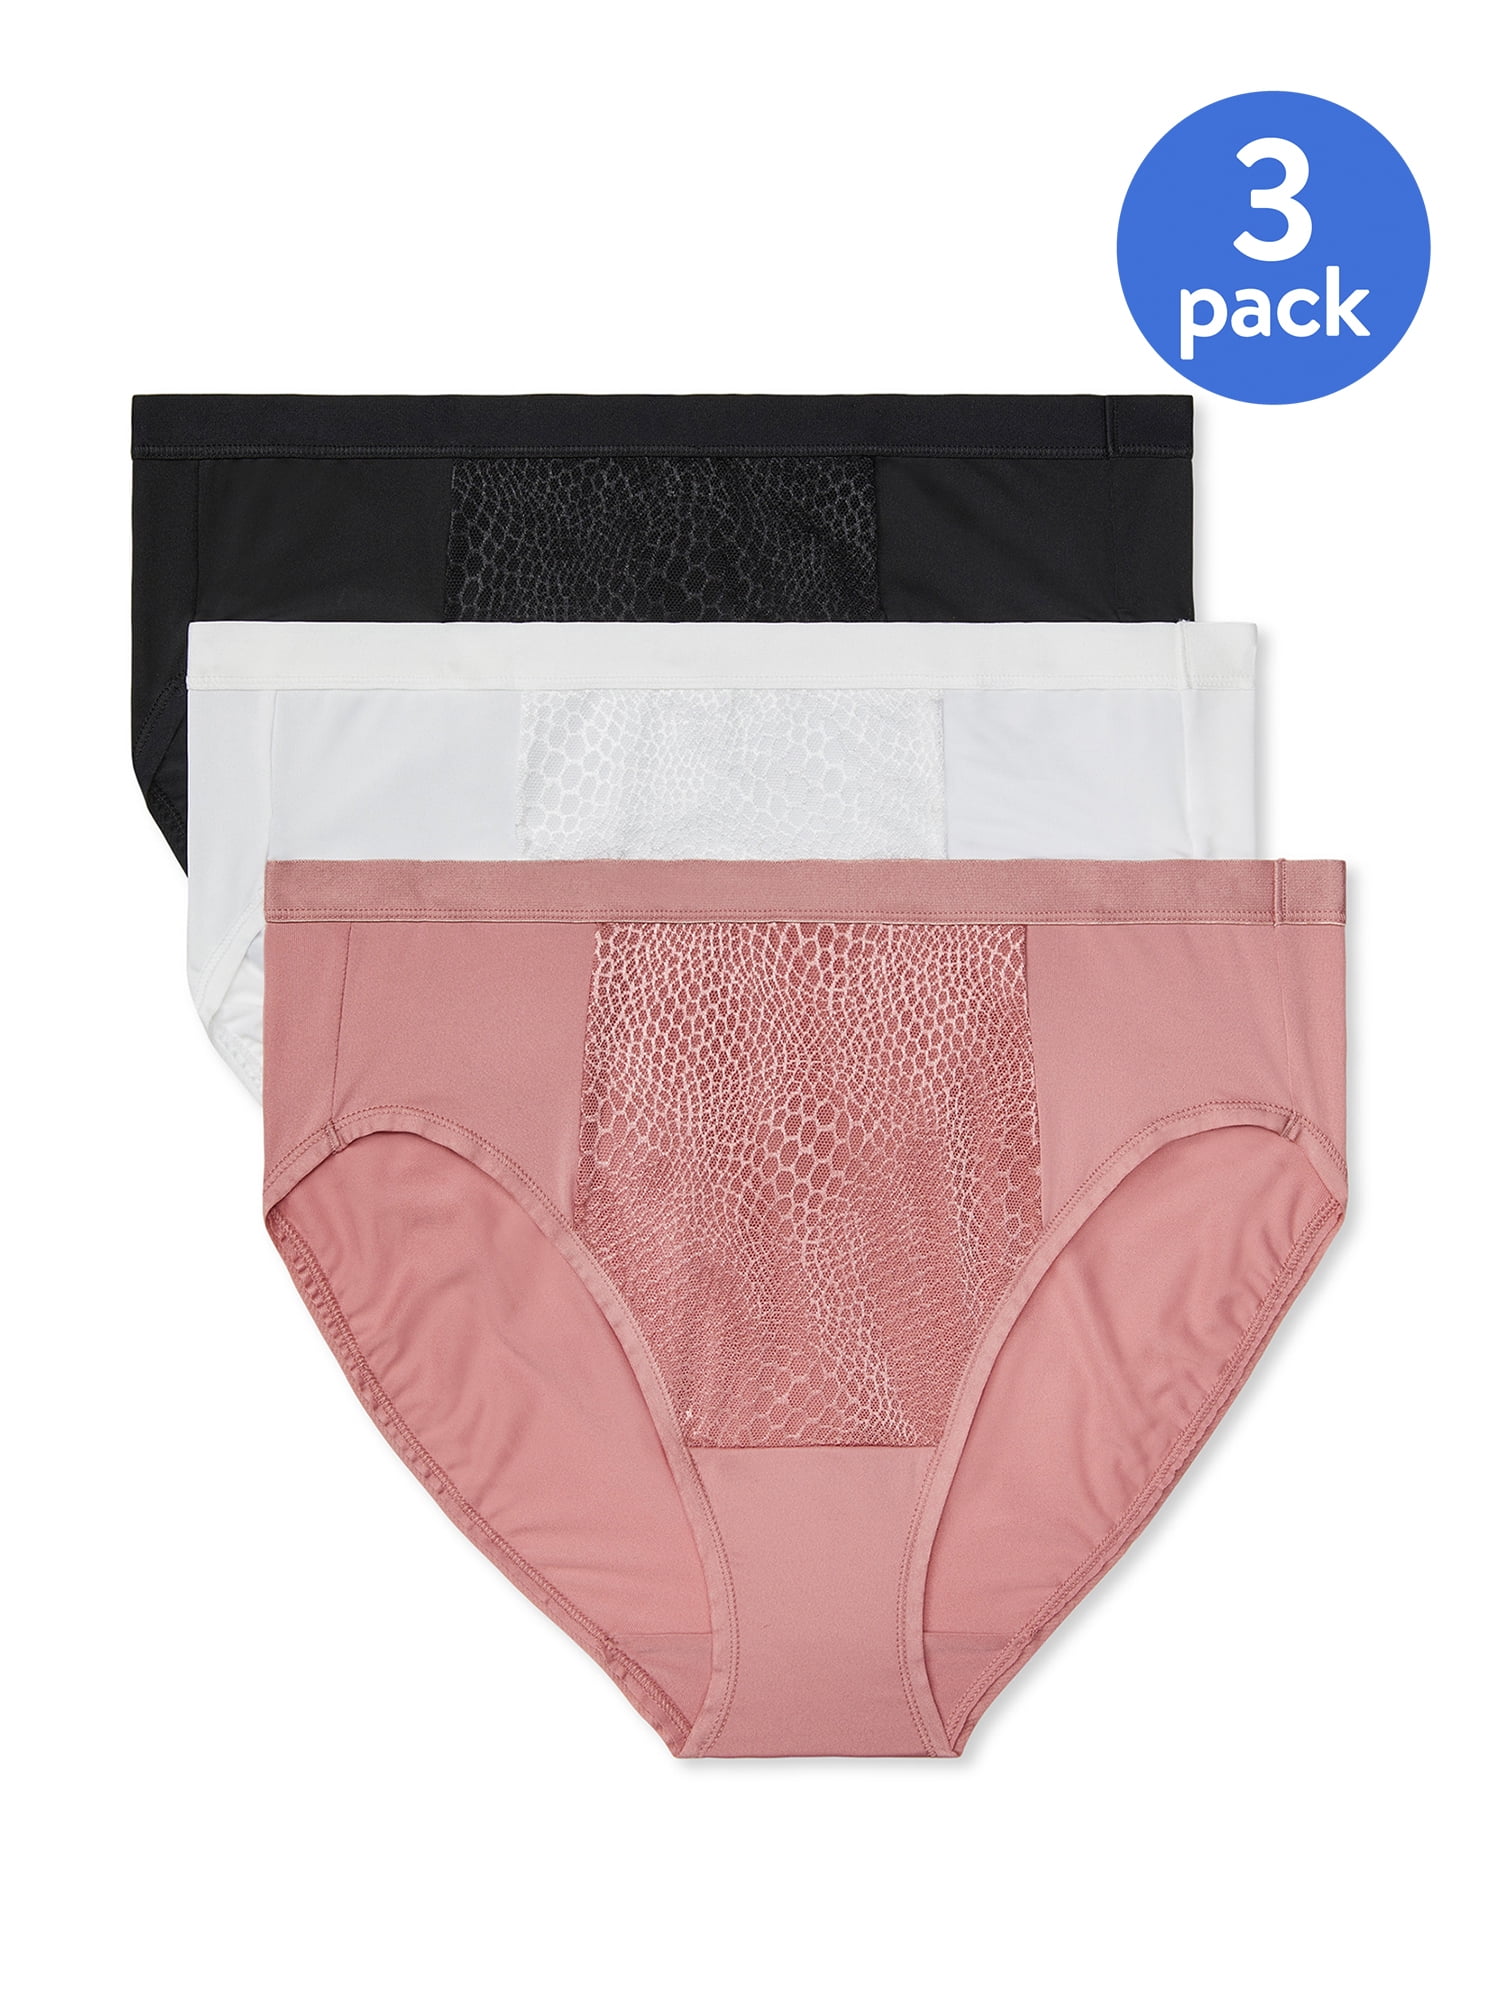  Berty Modas 3-Pack Absorbent Panties, Comfortable